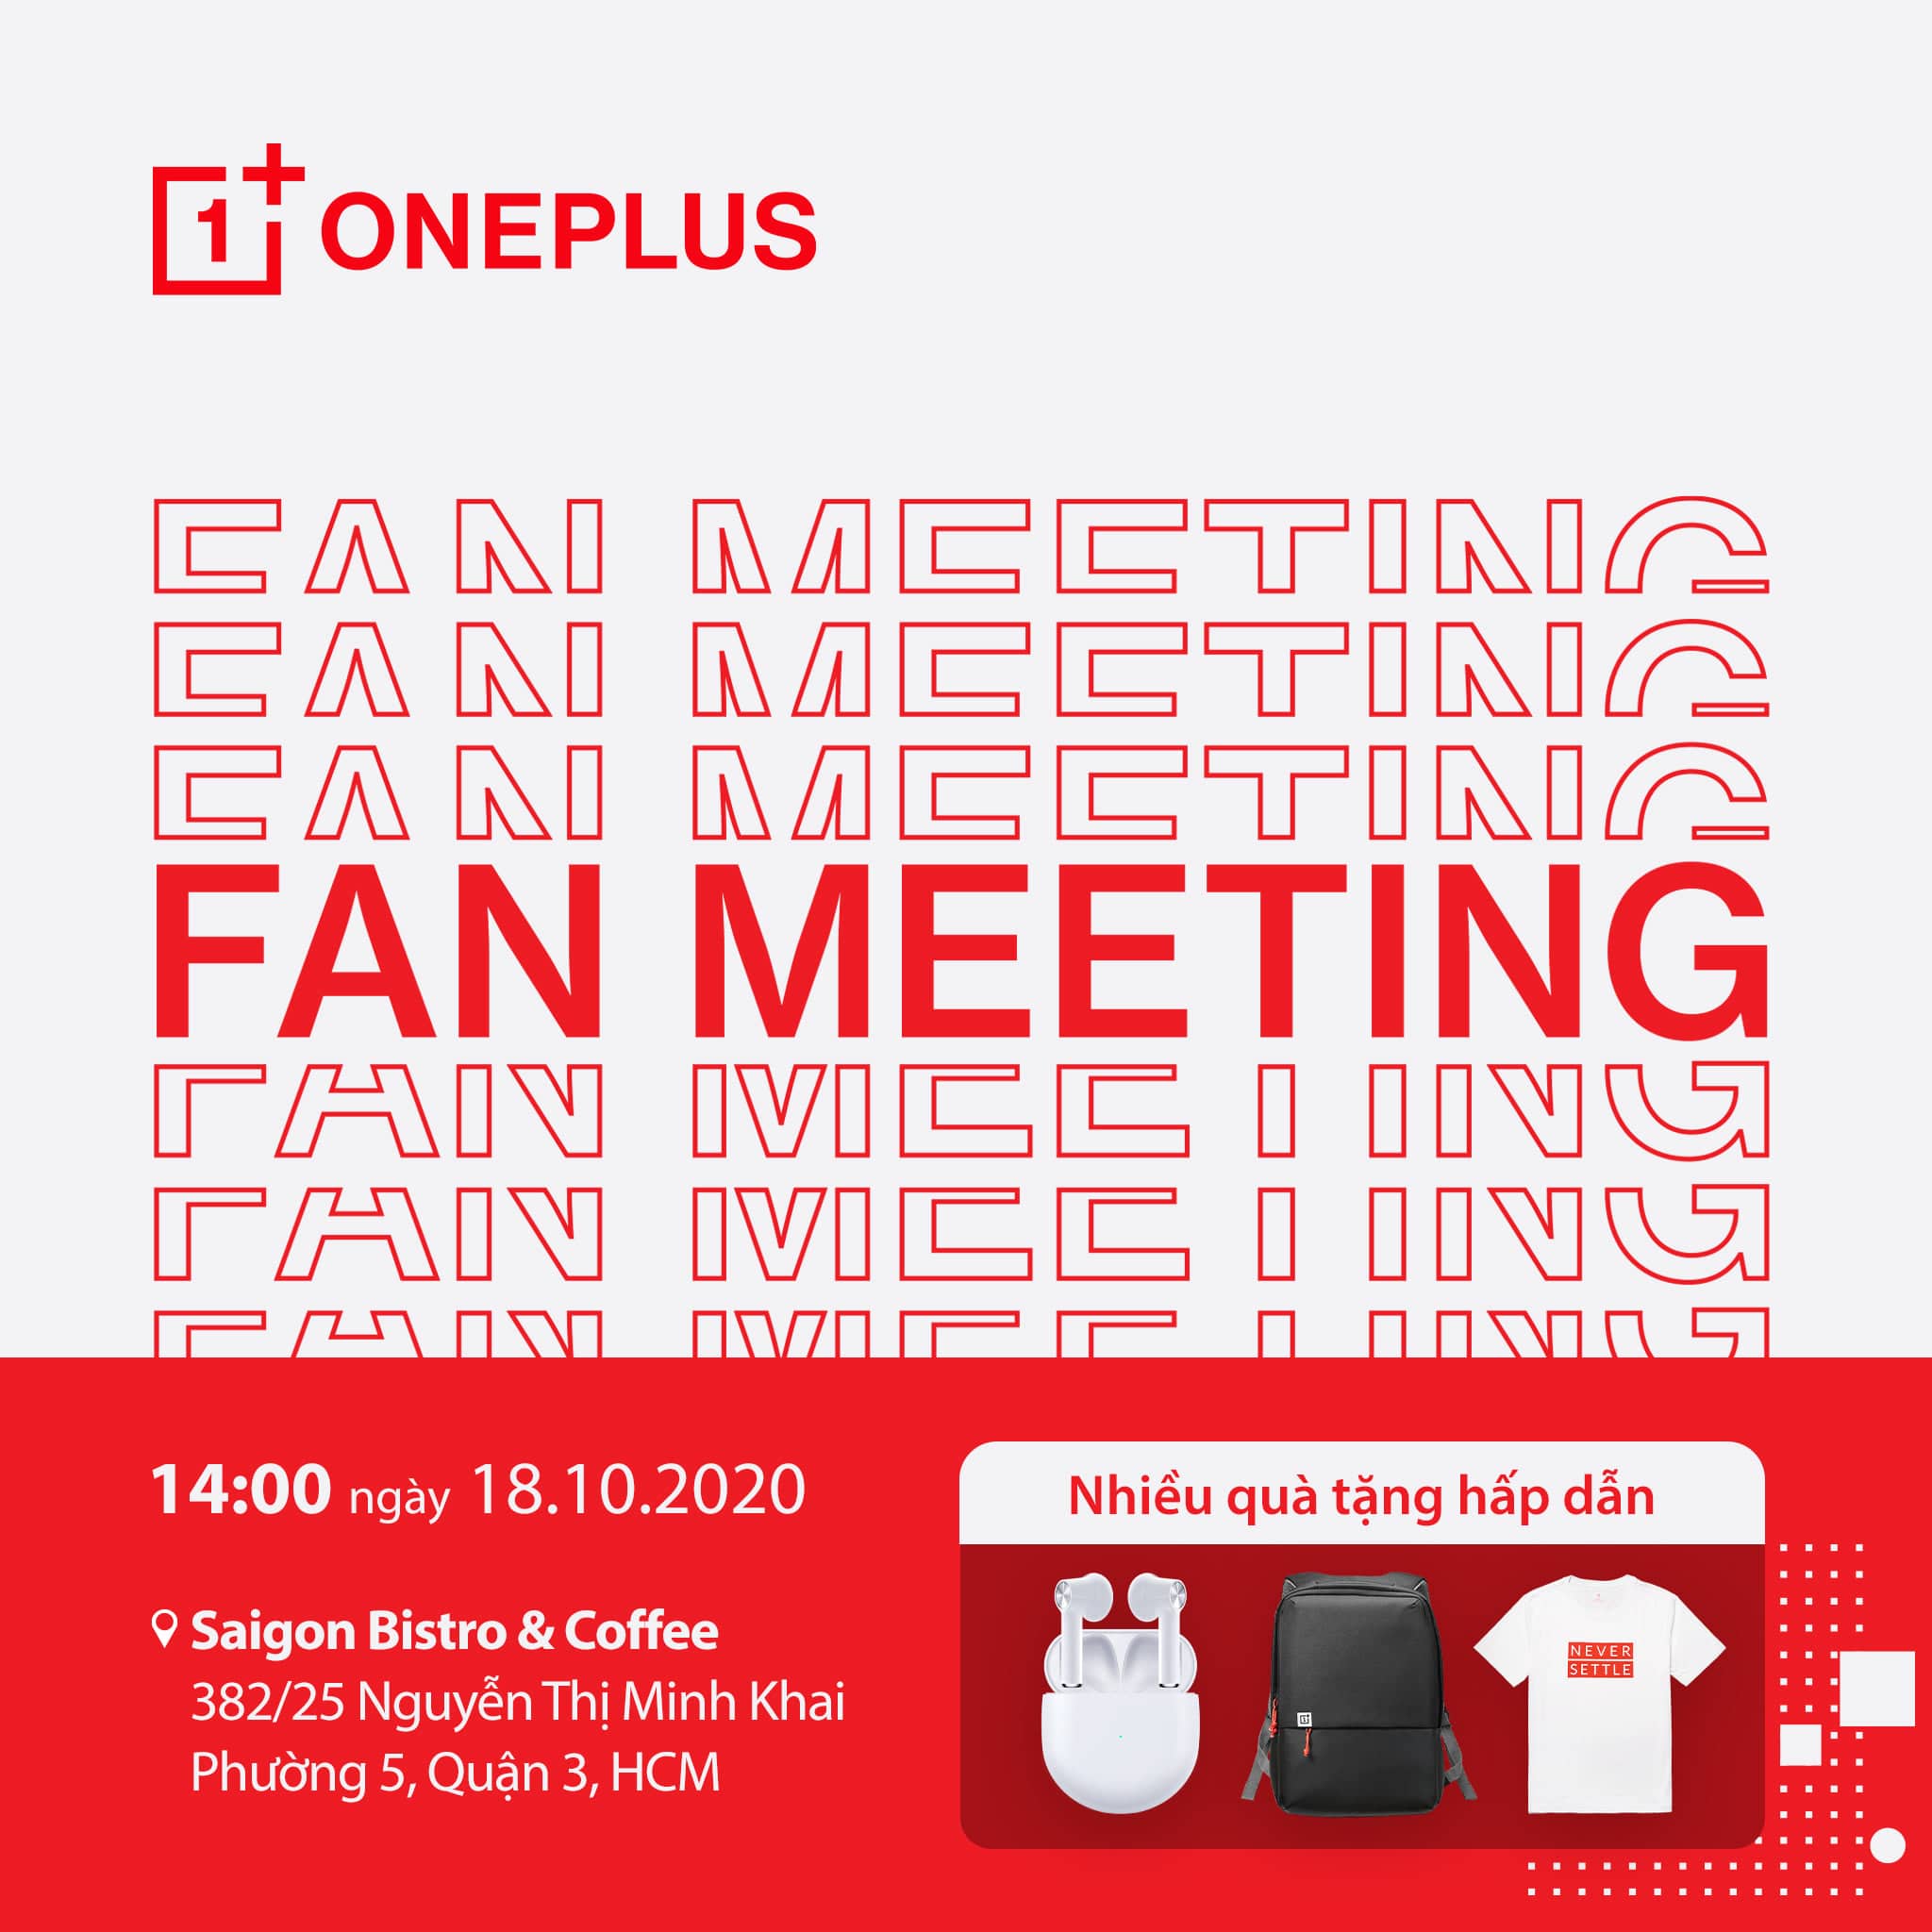 Nhanh tay đăng ký buổi FAN MEETING của OnePlus để trở thành người đầu tiên trải nghiệm OnePlus 8T 5G